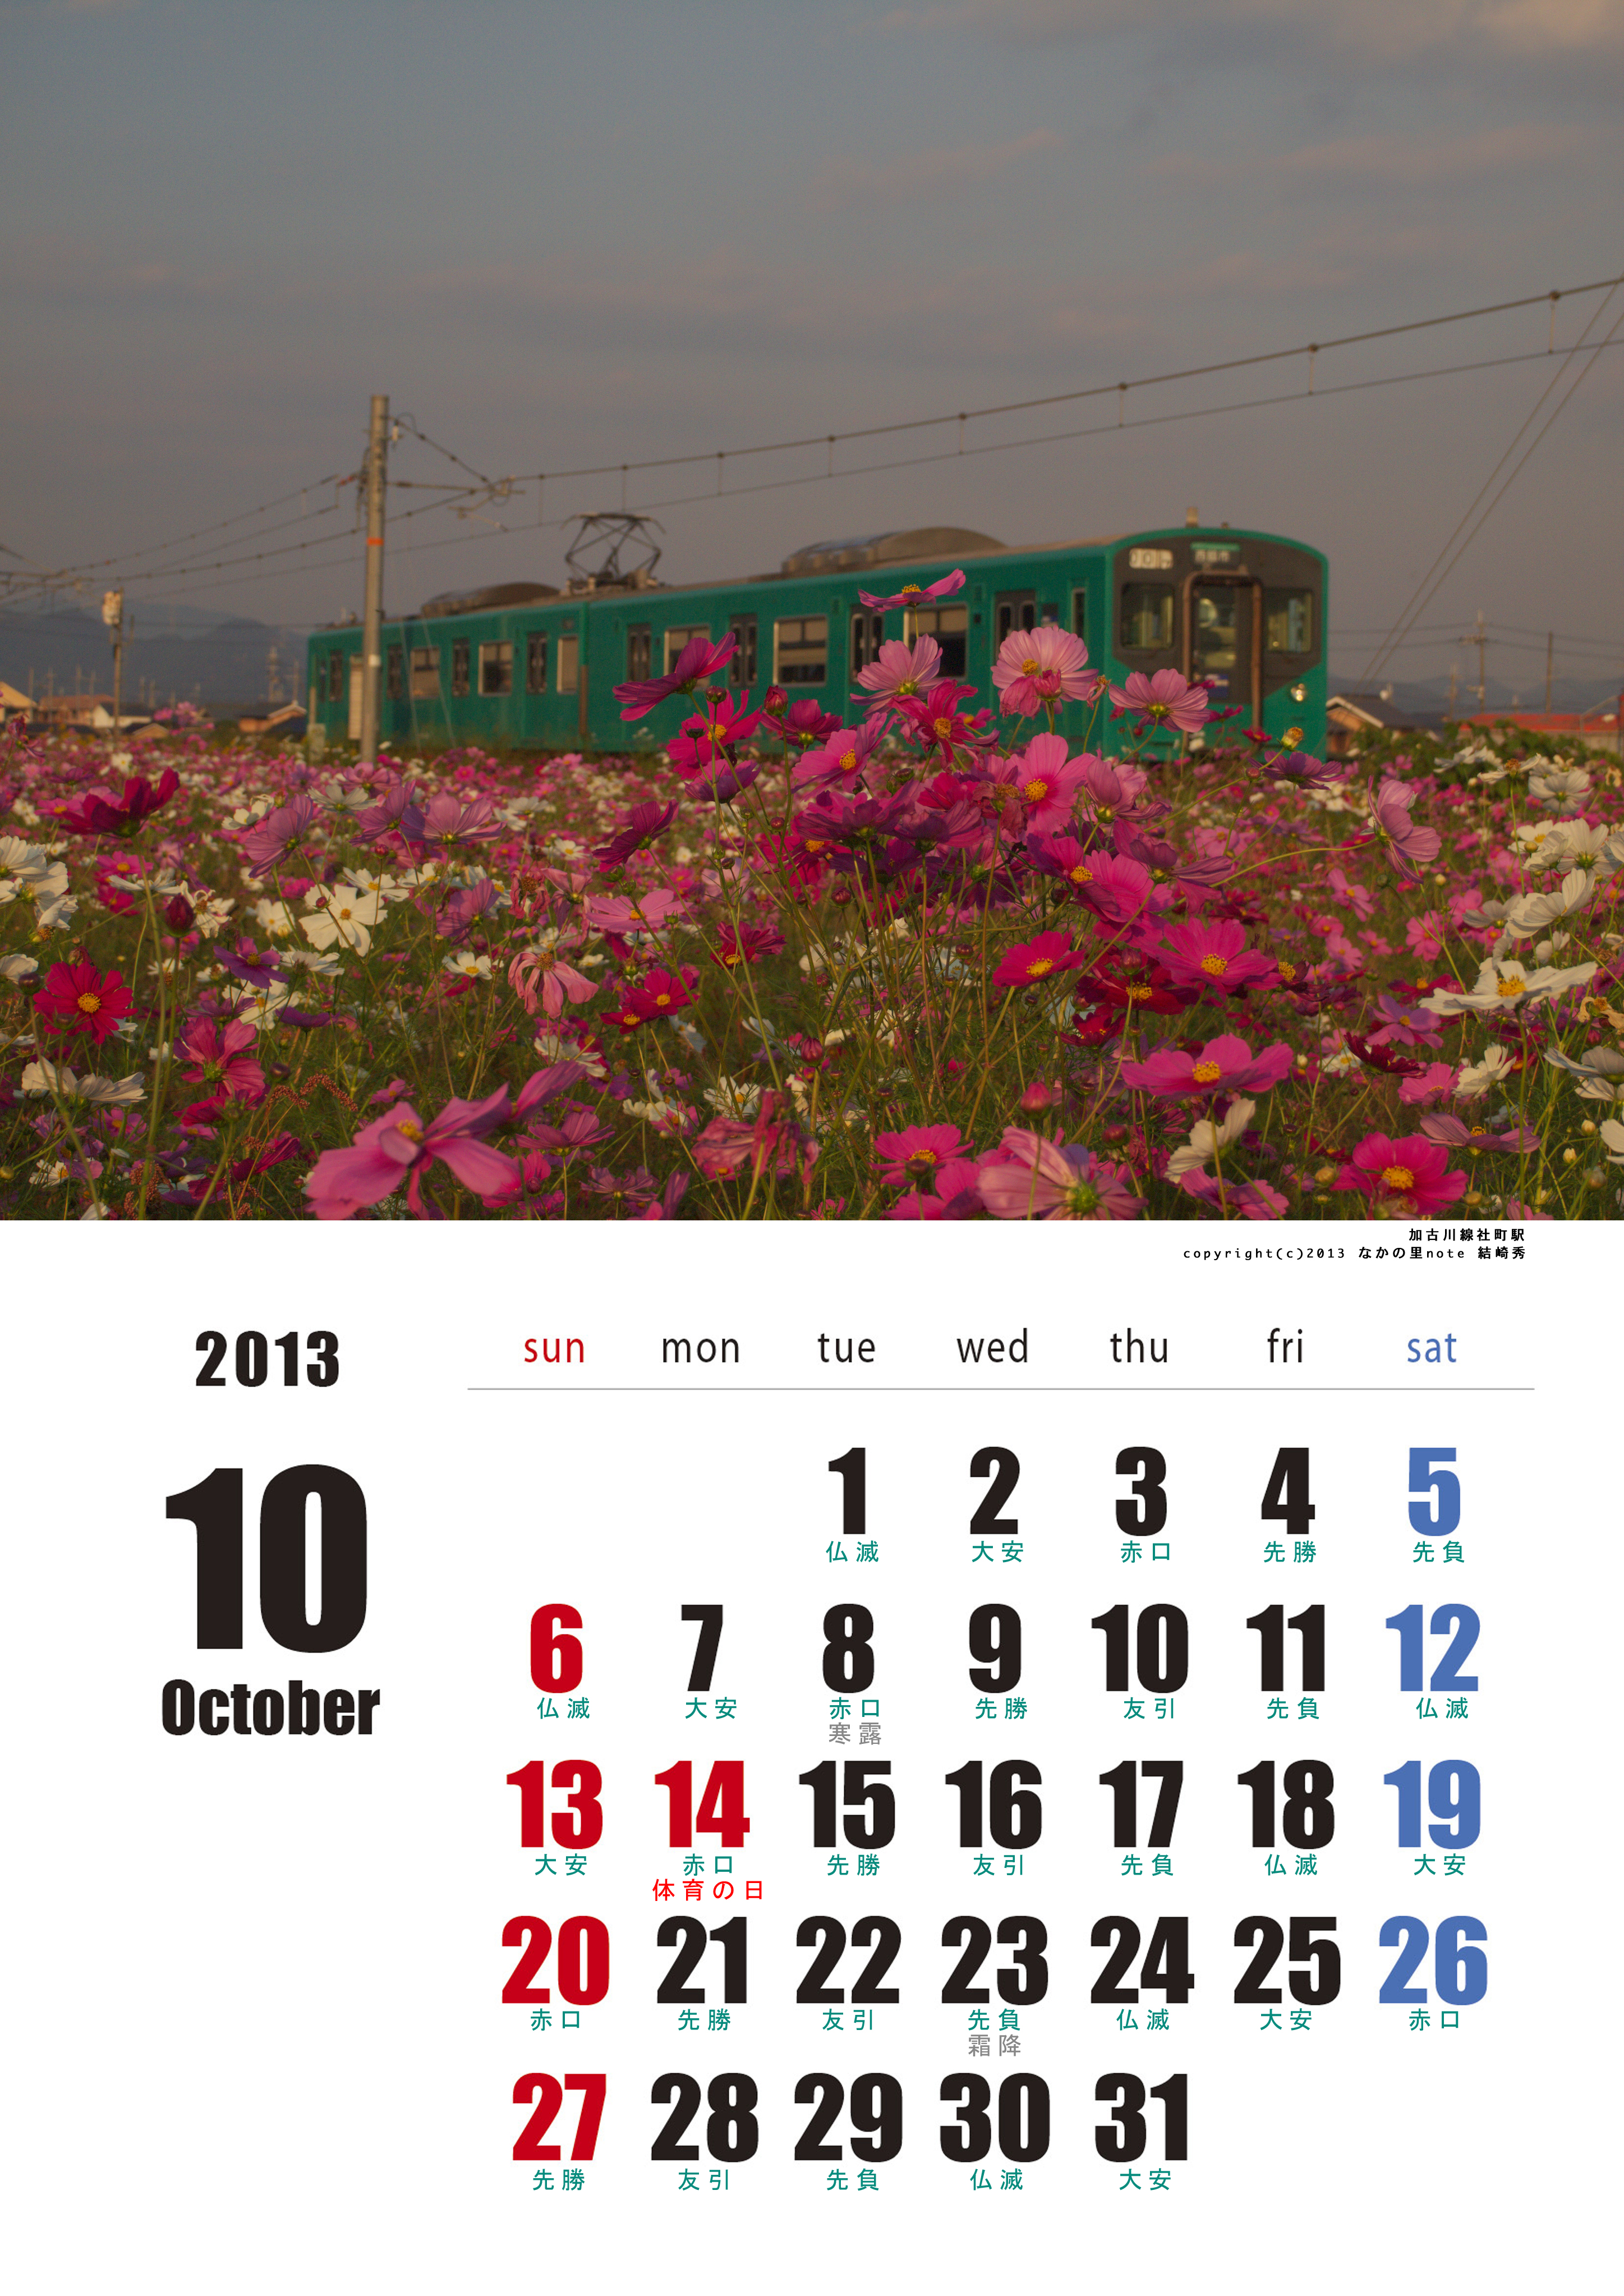 2013年10月六曜ありカレンダー 北播磨ローカルネットワーク